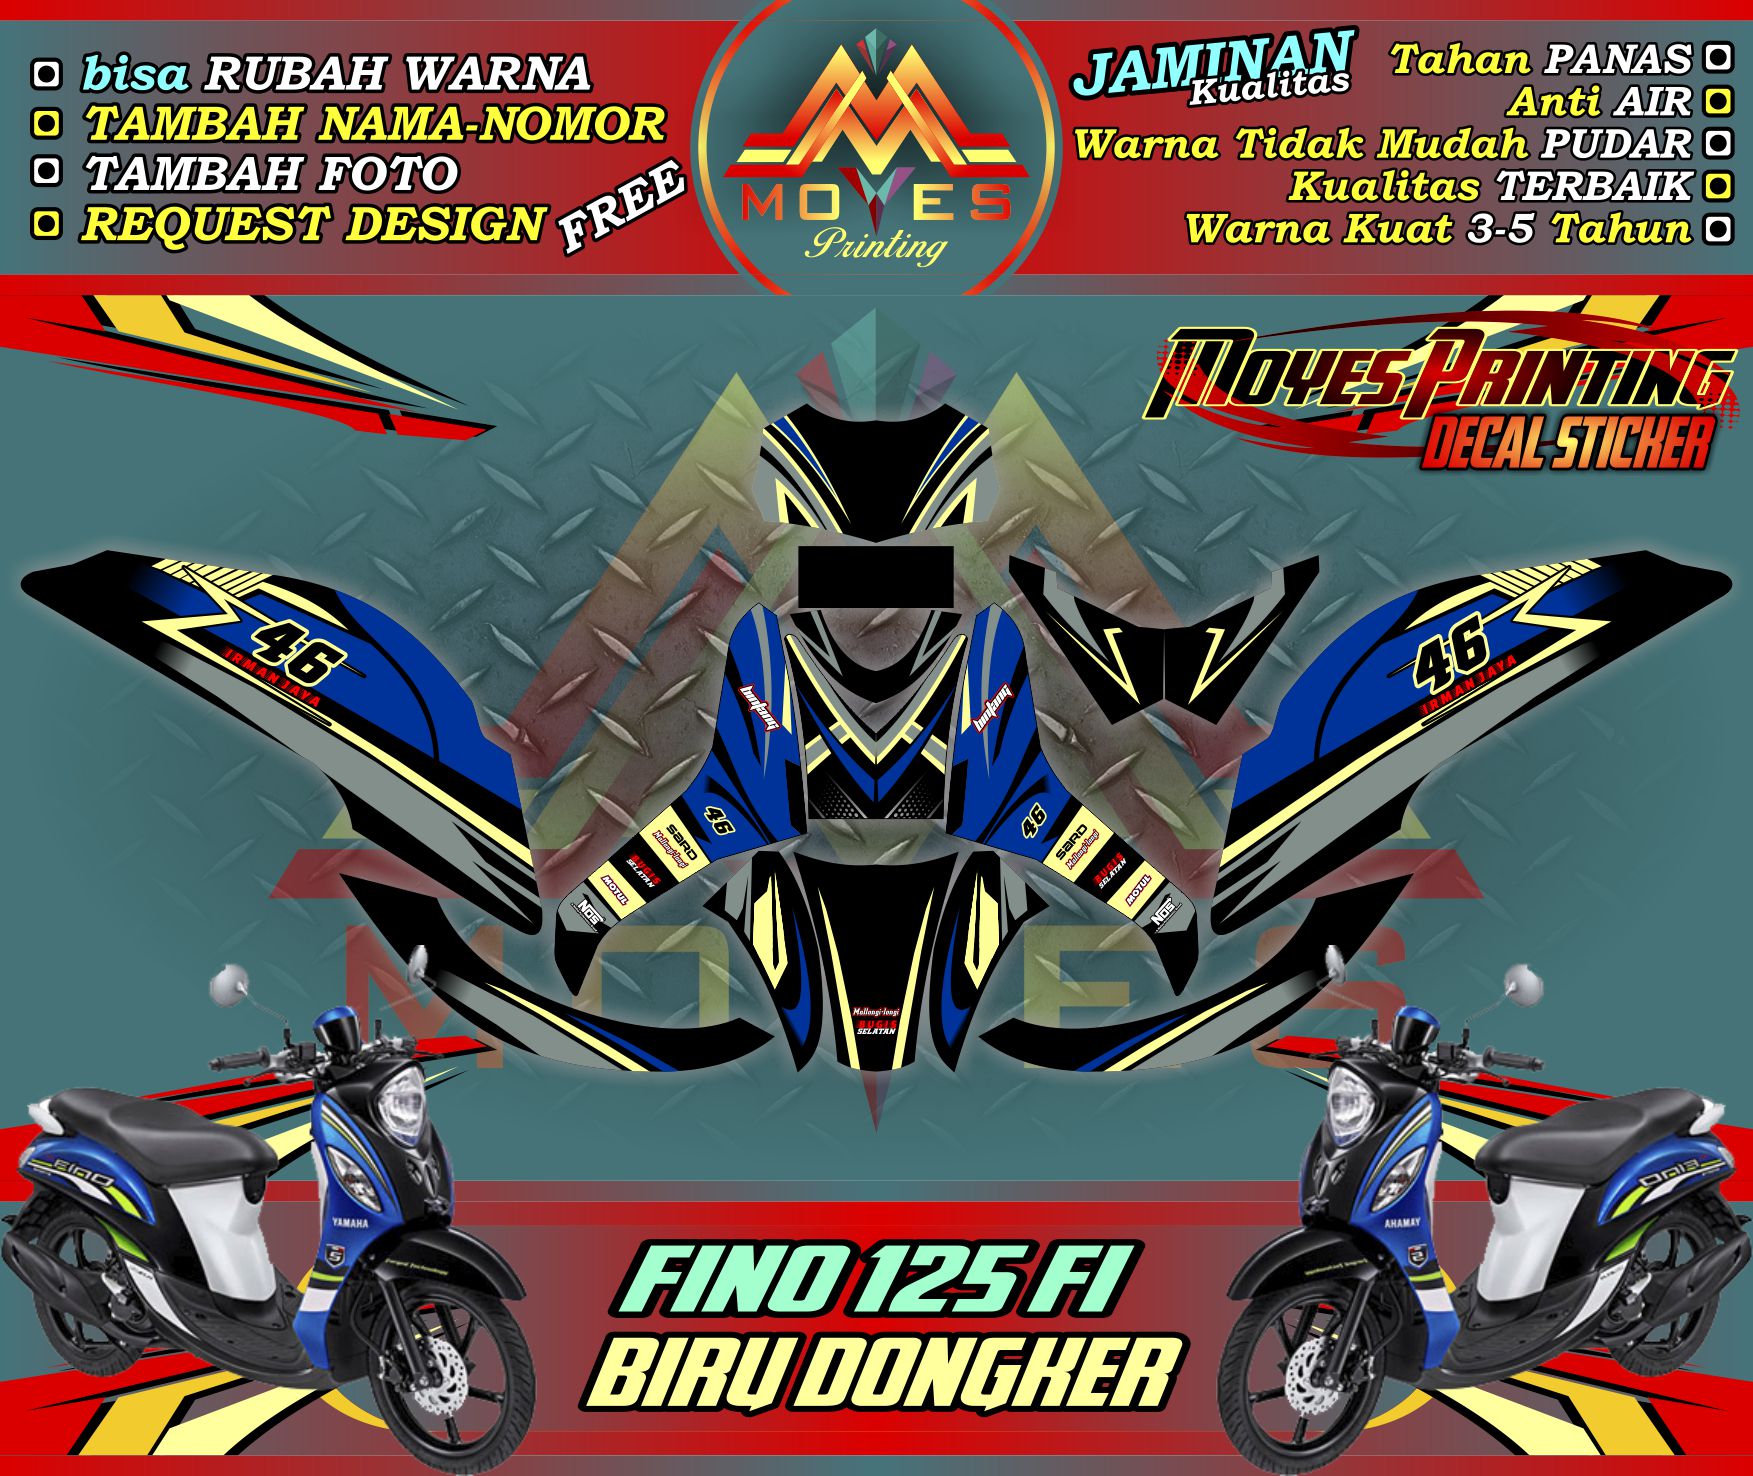 Sticker Motor Yamaha Fino 125 Fi Decal Stiker Yamaha Fino Fi 125 Grande Biru Dongker Lazada Indonesia